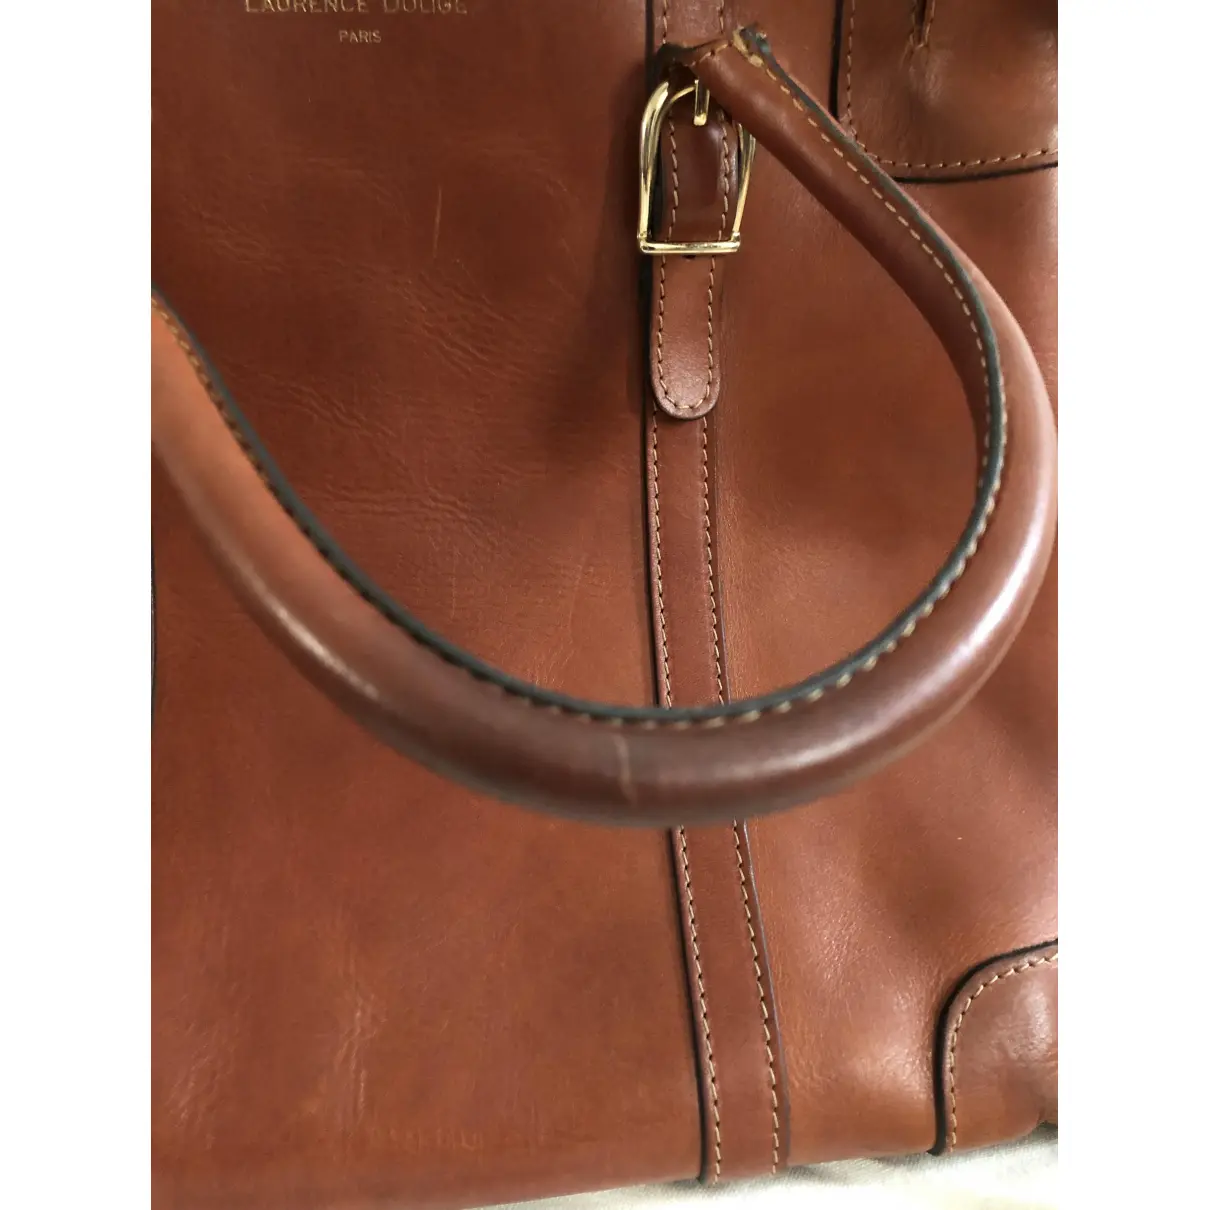 Leather handbag Laurence Dolige